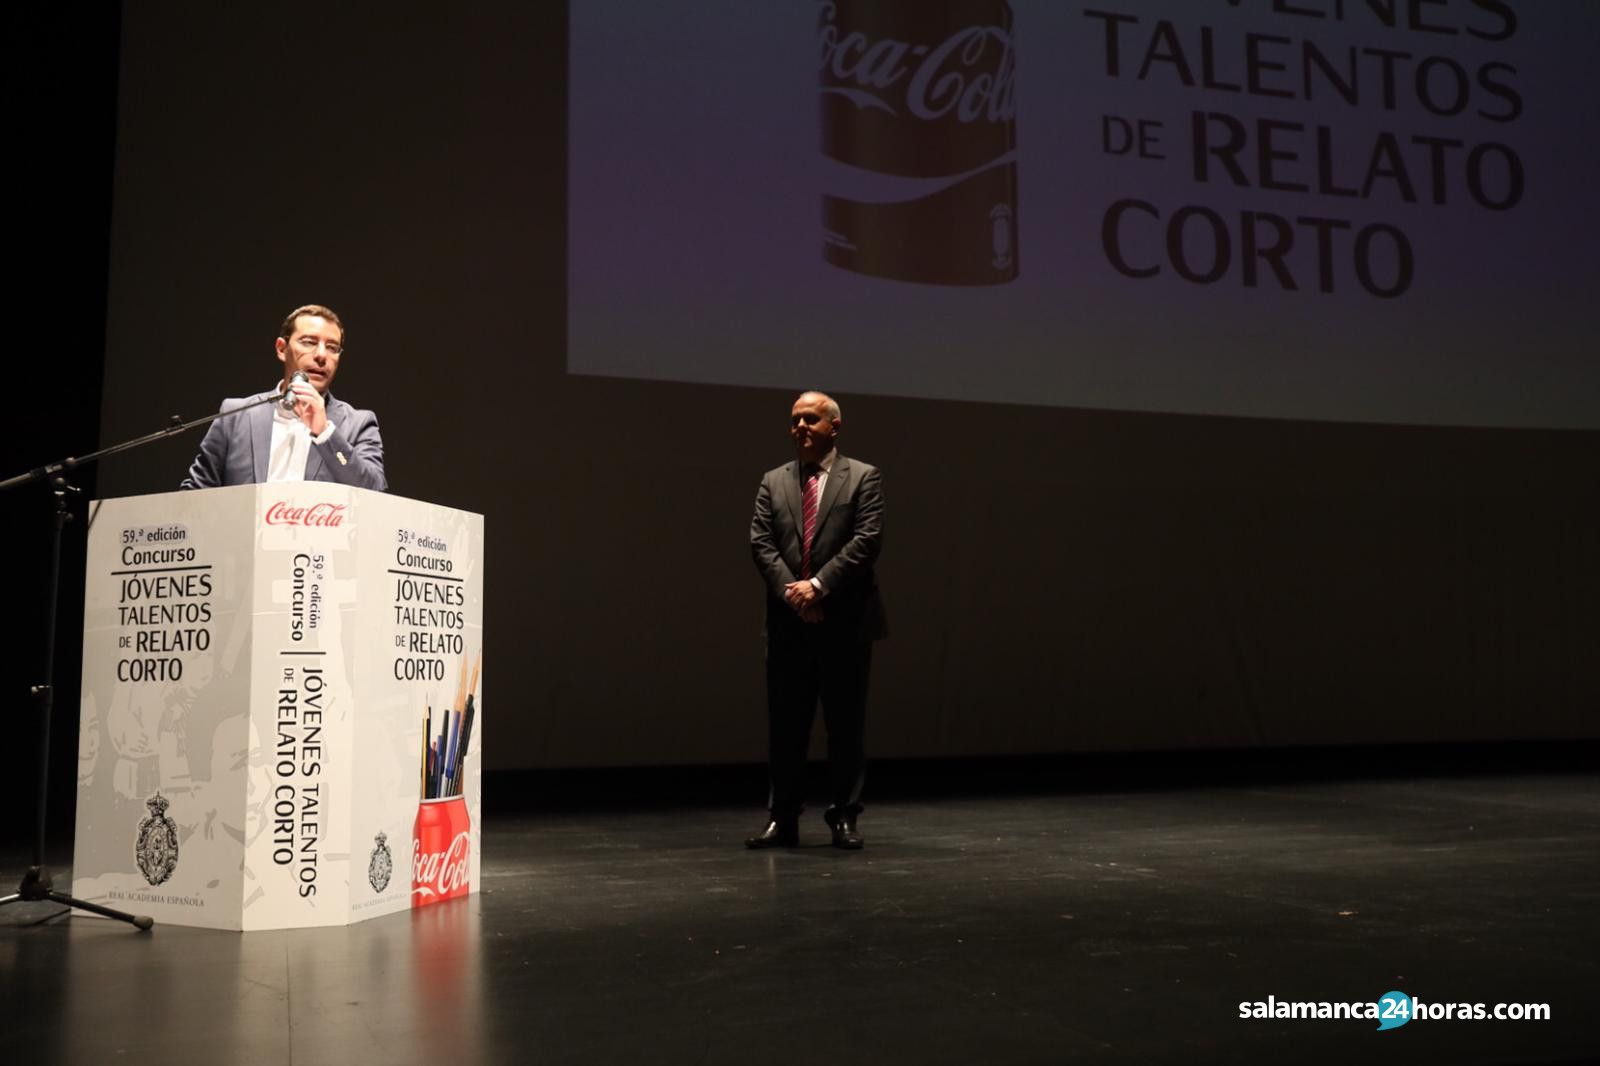  Concurso de Relatos Cortos de Coca Cola (2) 